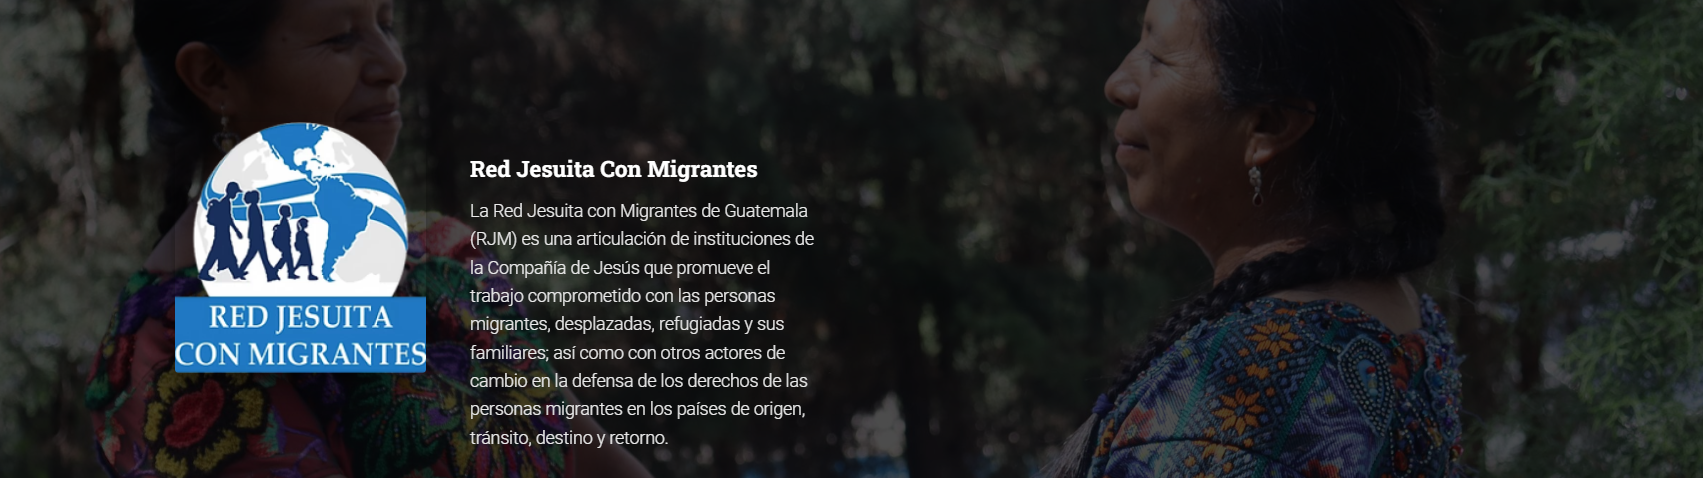 Organizaciones sociales en Guatemala aportan con información a migrantes